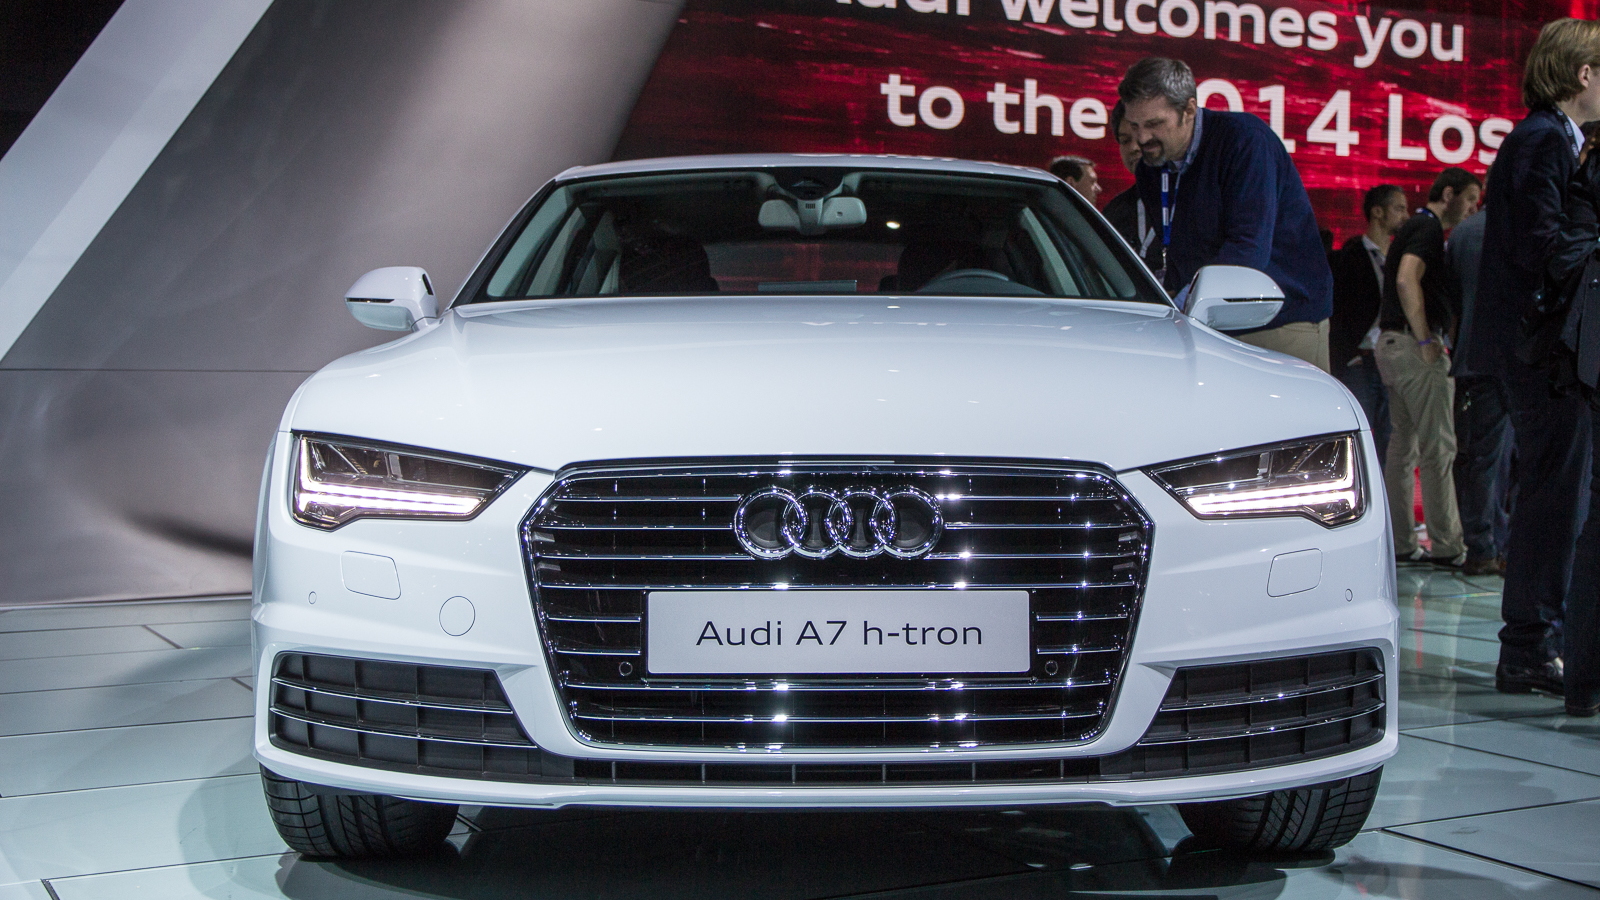 Audi A7 h-tron quattro, 2014 Los Angeles Auto Show